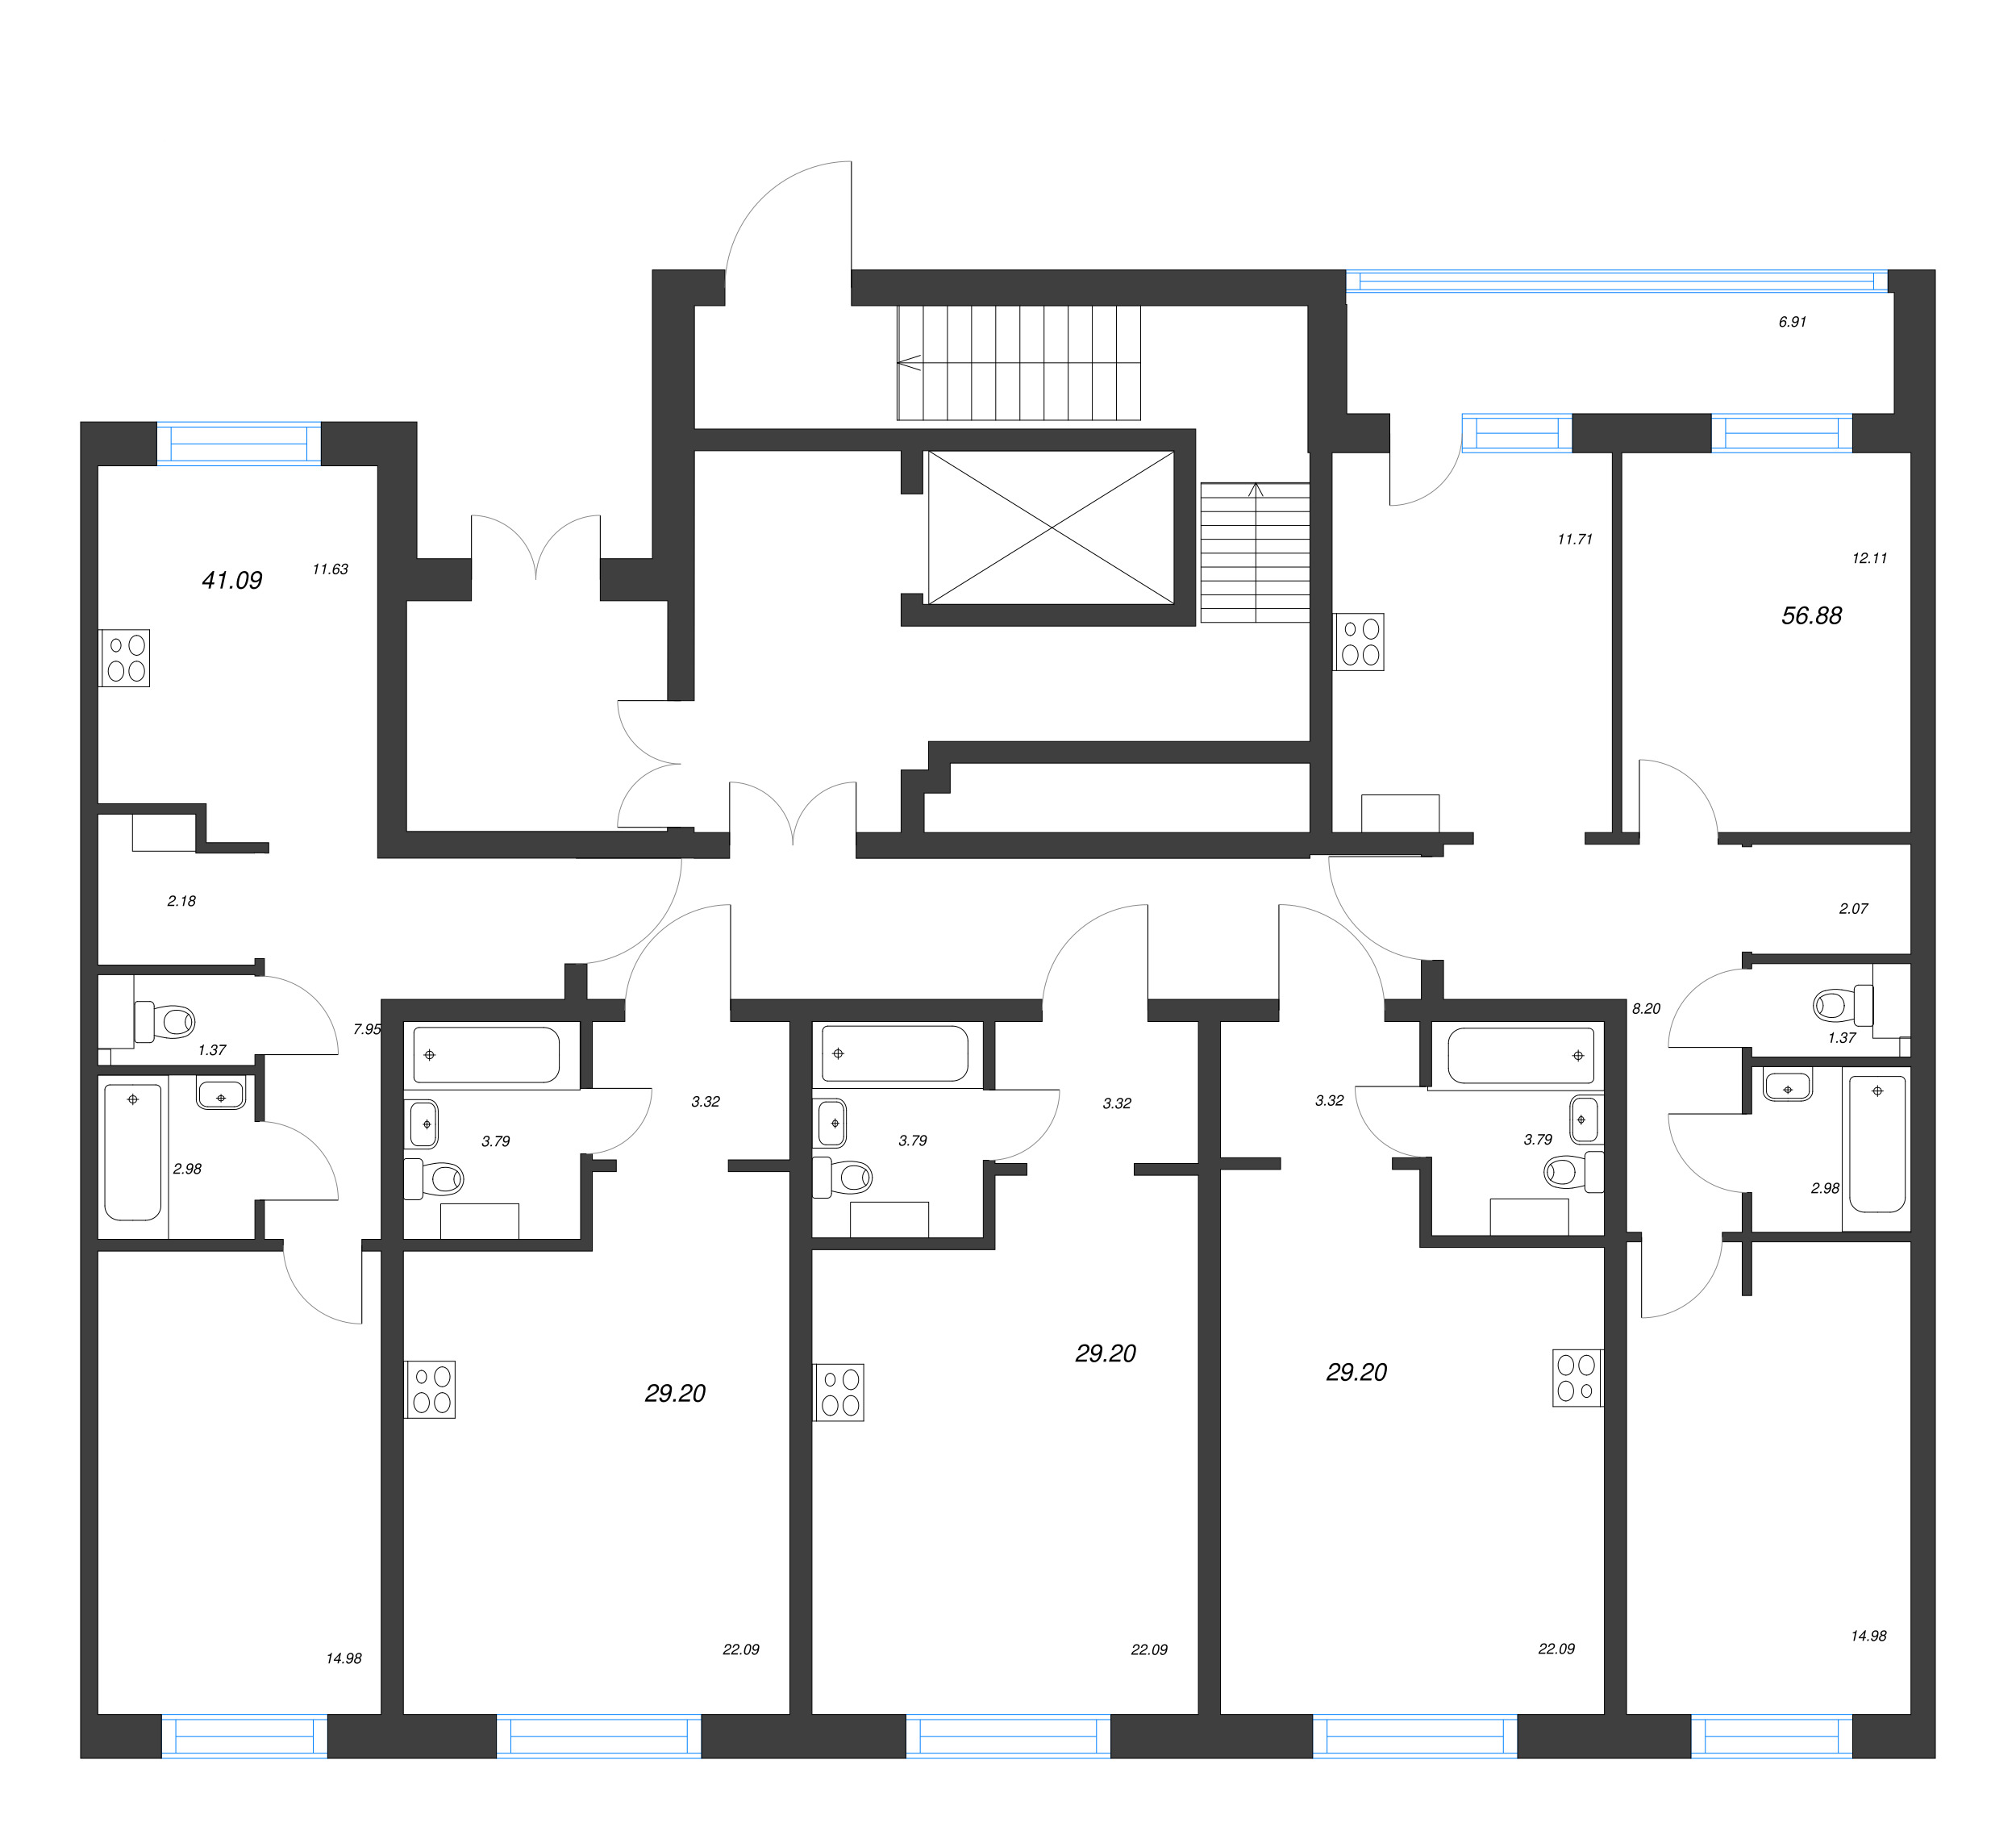 2-комнатная квартира, 56.88 м² - планировка этажа